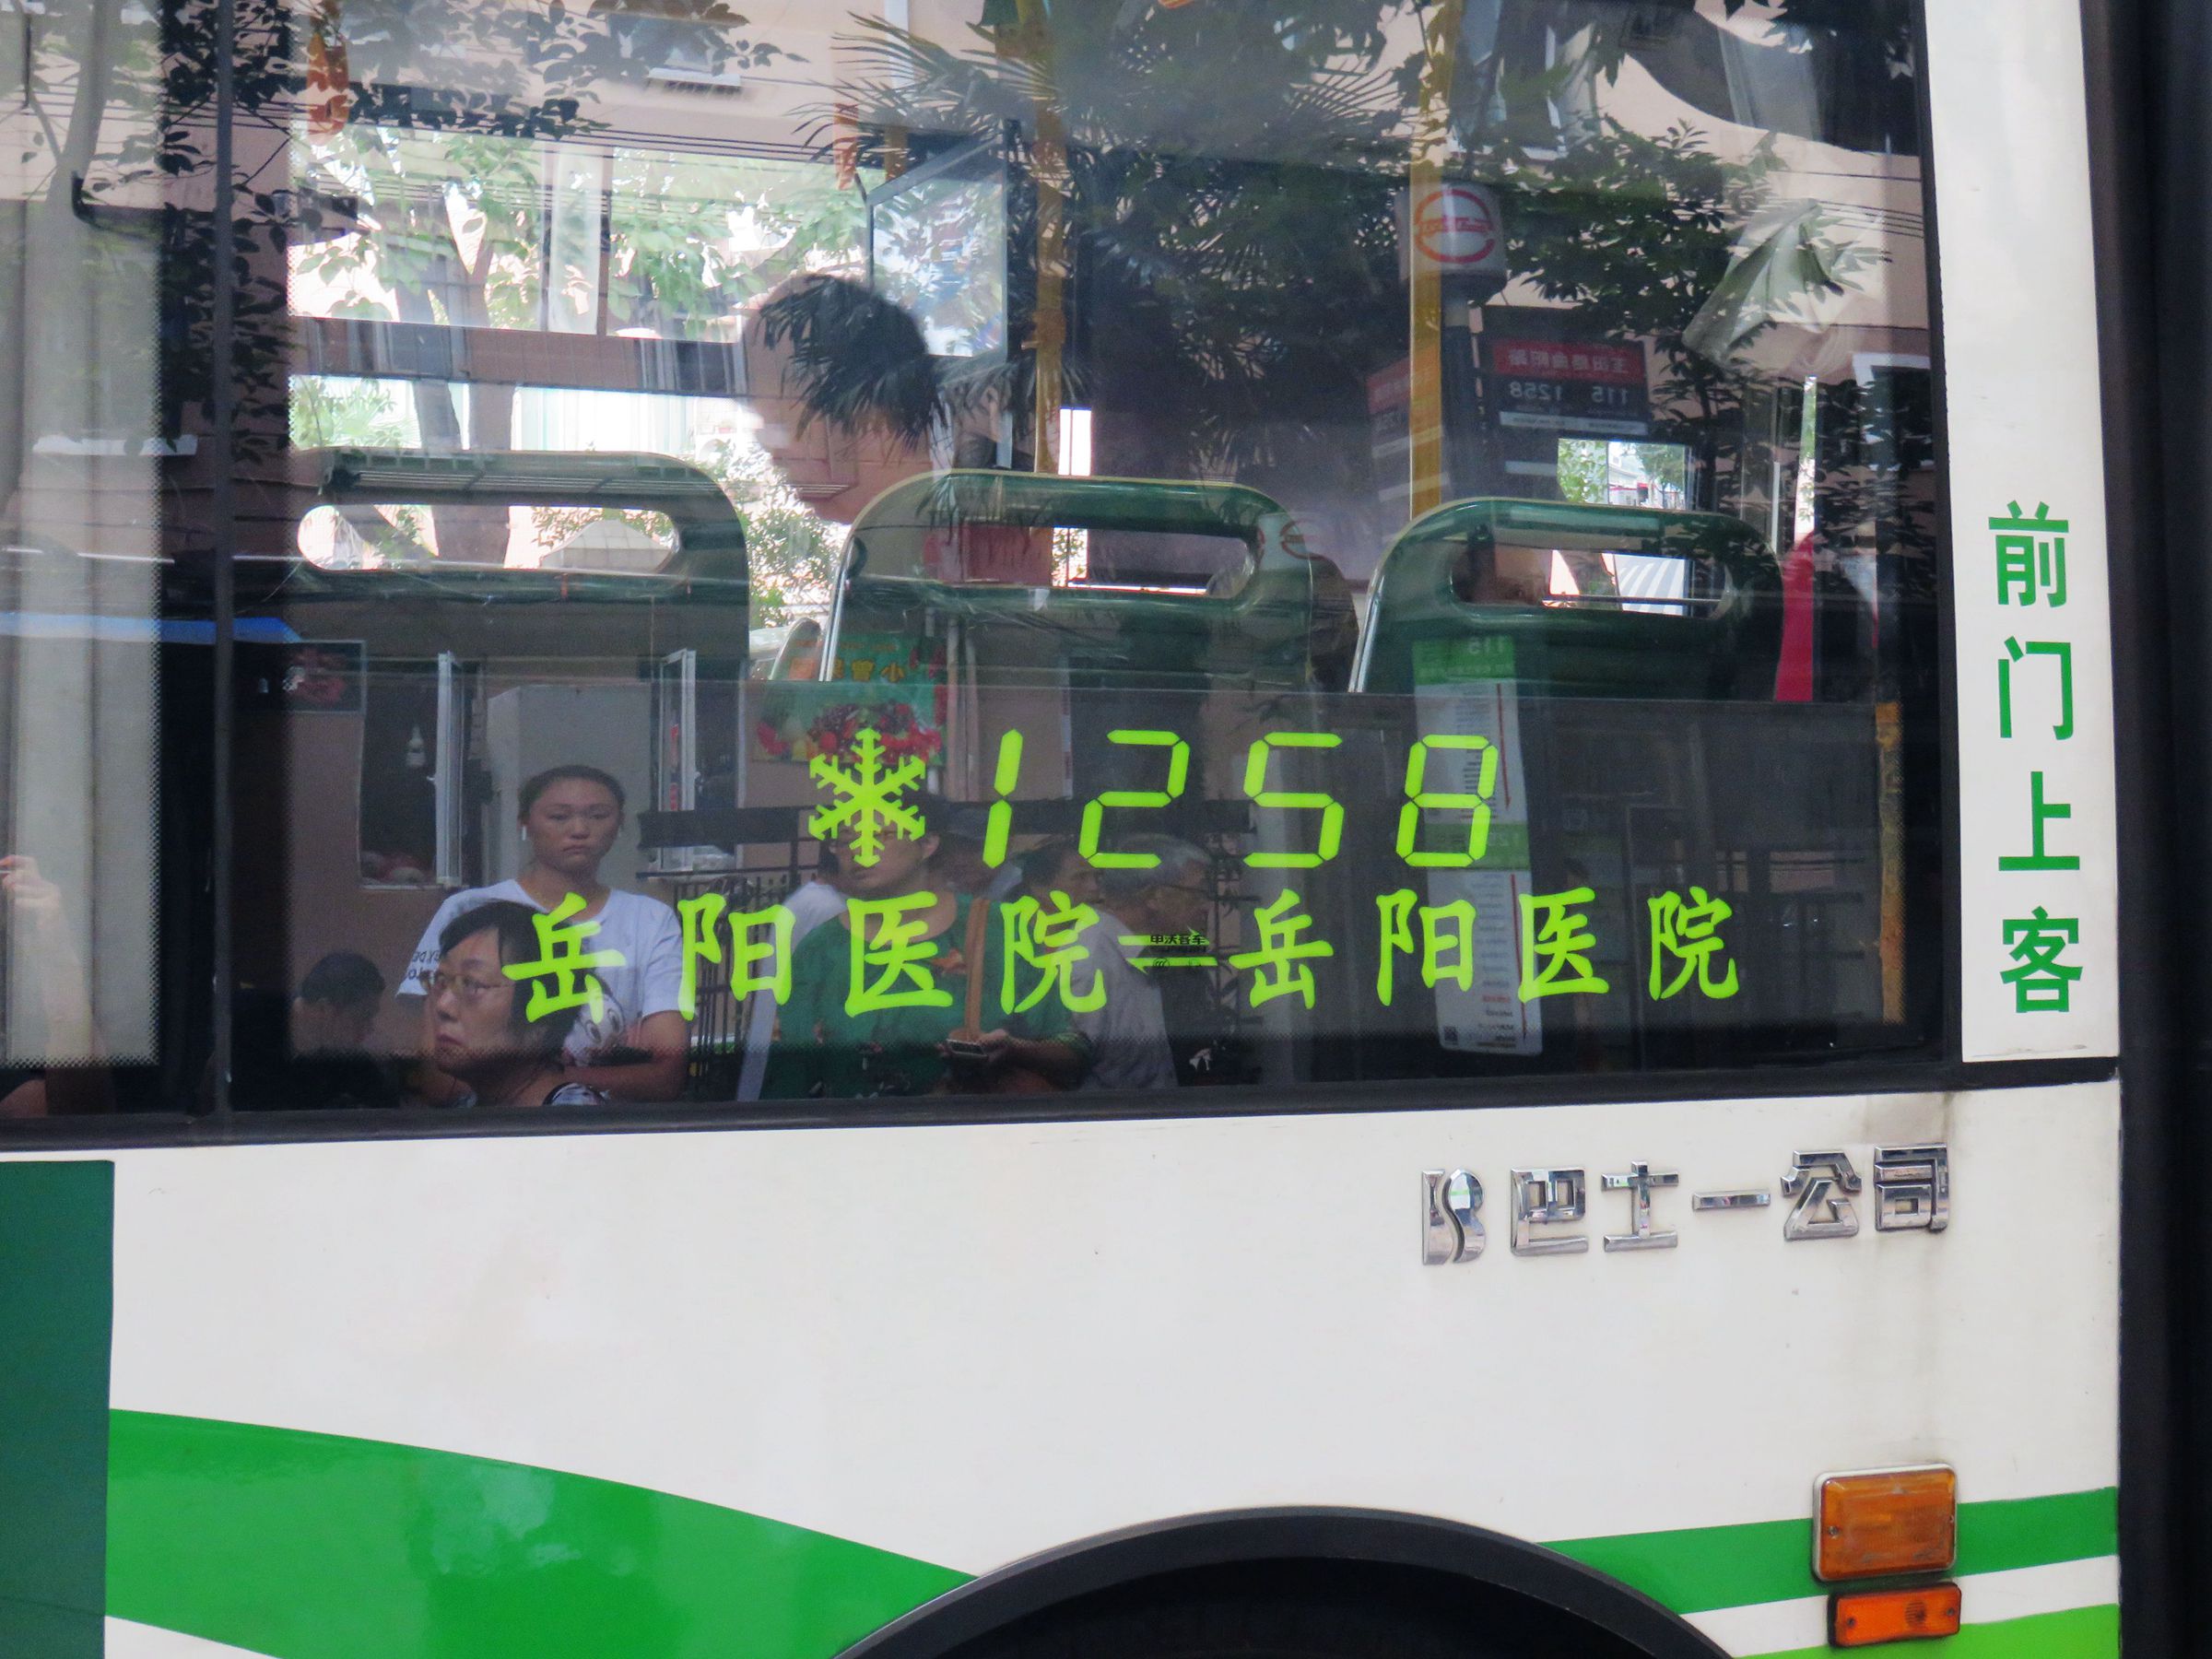 上海公交1258路